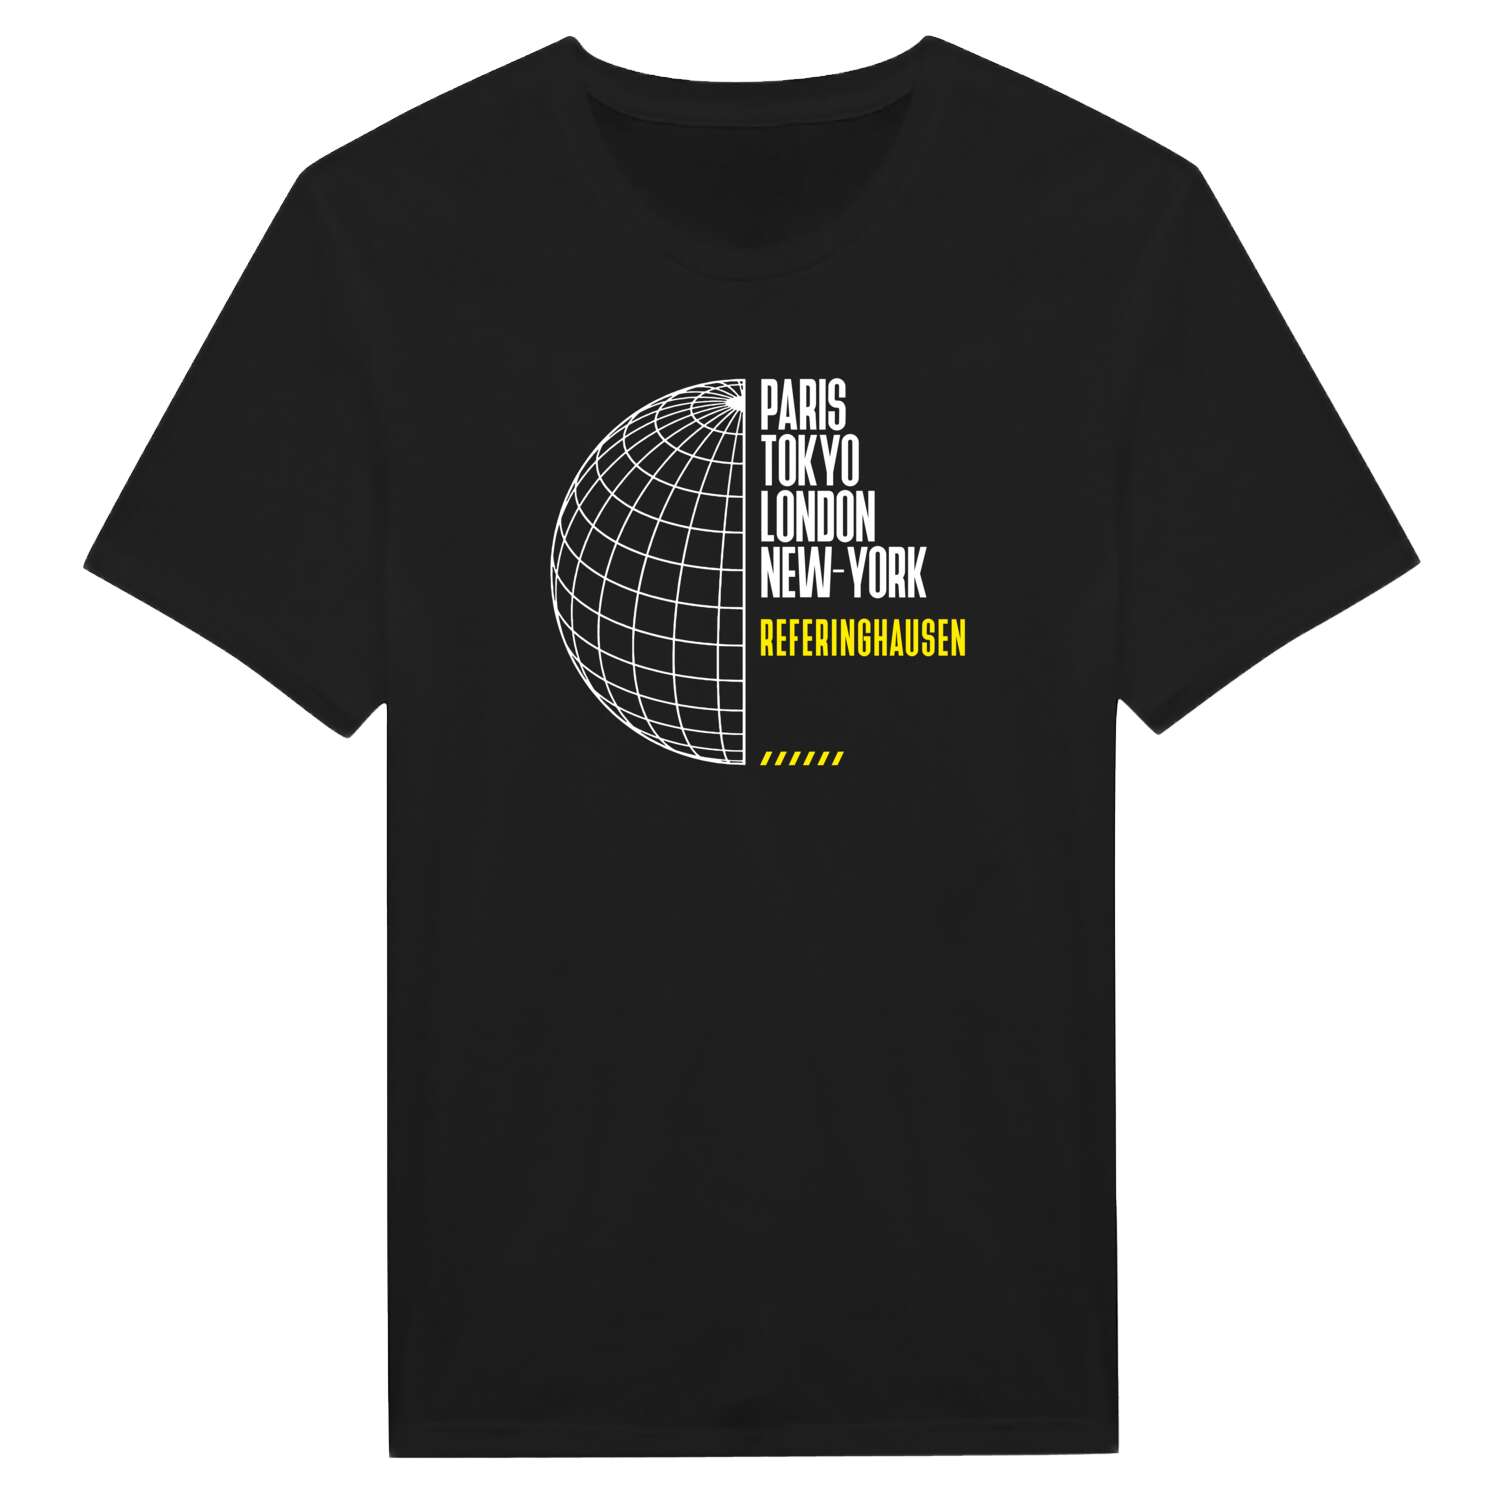 Referinghausen T-Shirt »Paris Tokyo London«